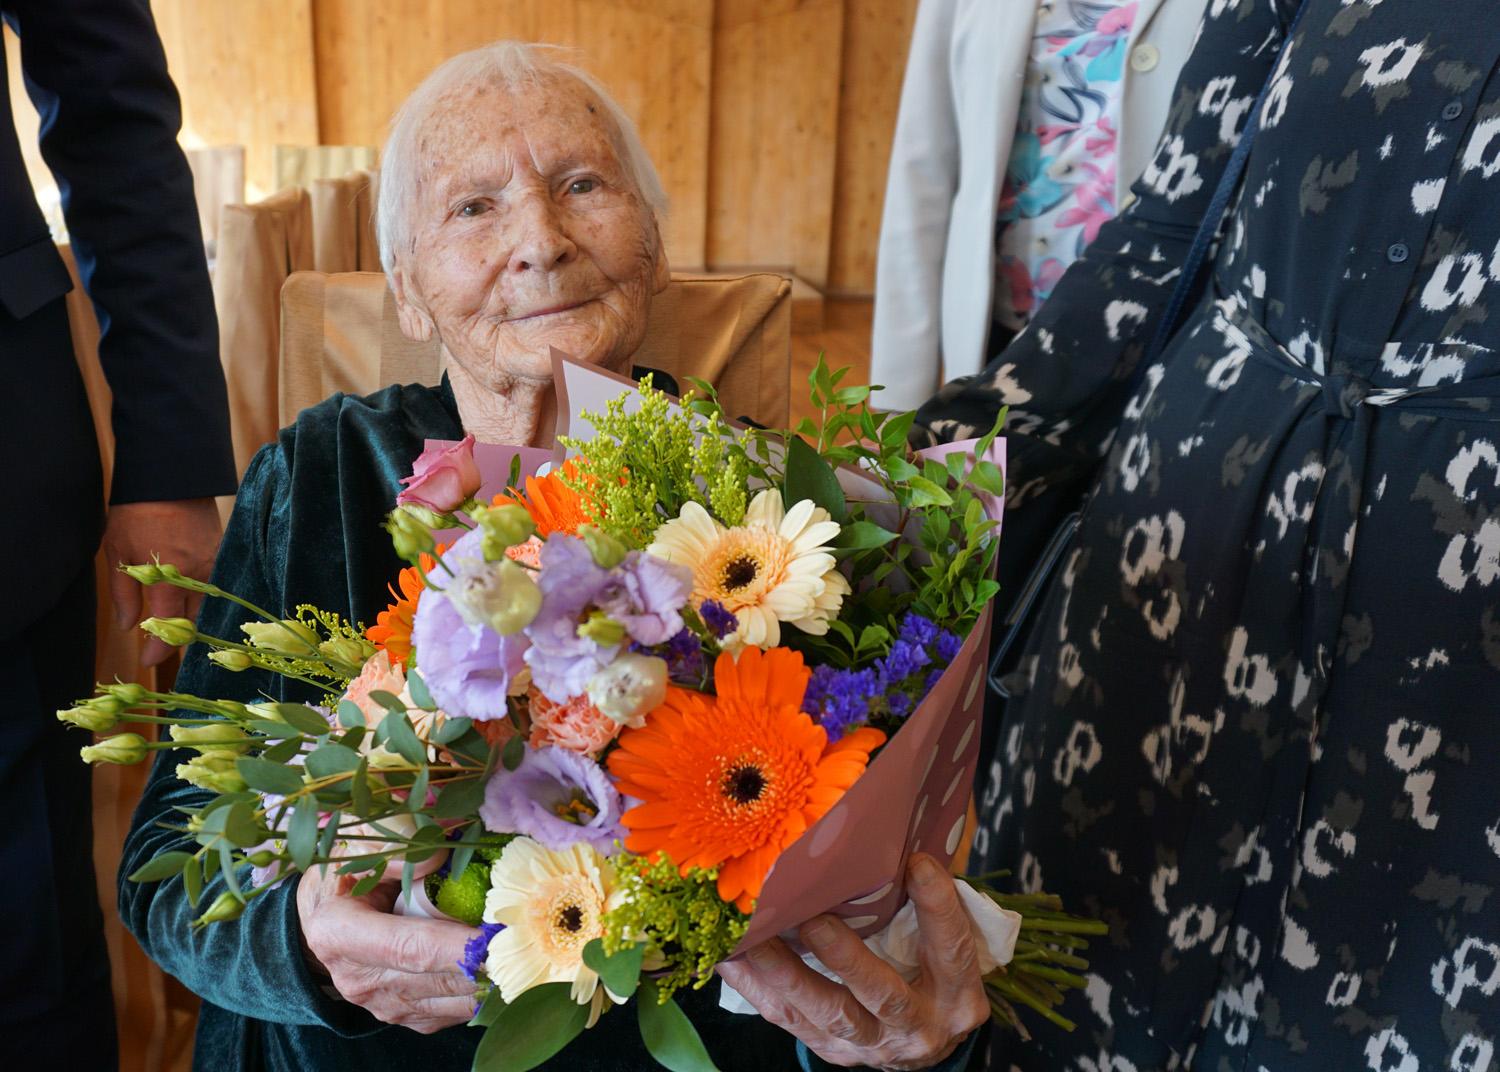 Gyvenimo sunkumai tik užgrūdino – atšventė 100-o metų sukaktį / Daivos Zimblienės nuotr. Juzė Talalienė pasveikinta su 100-o metų jubiliejumi.